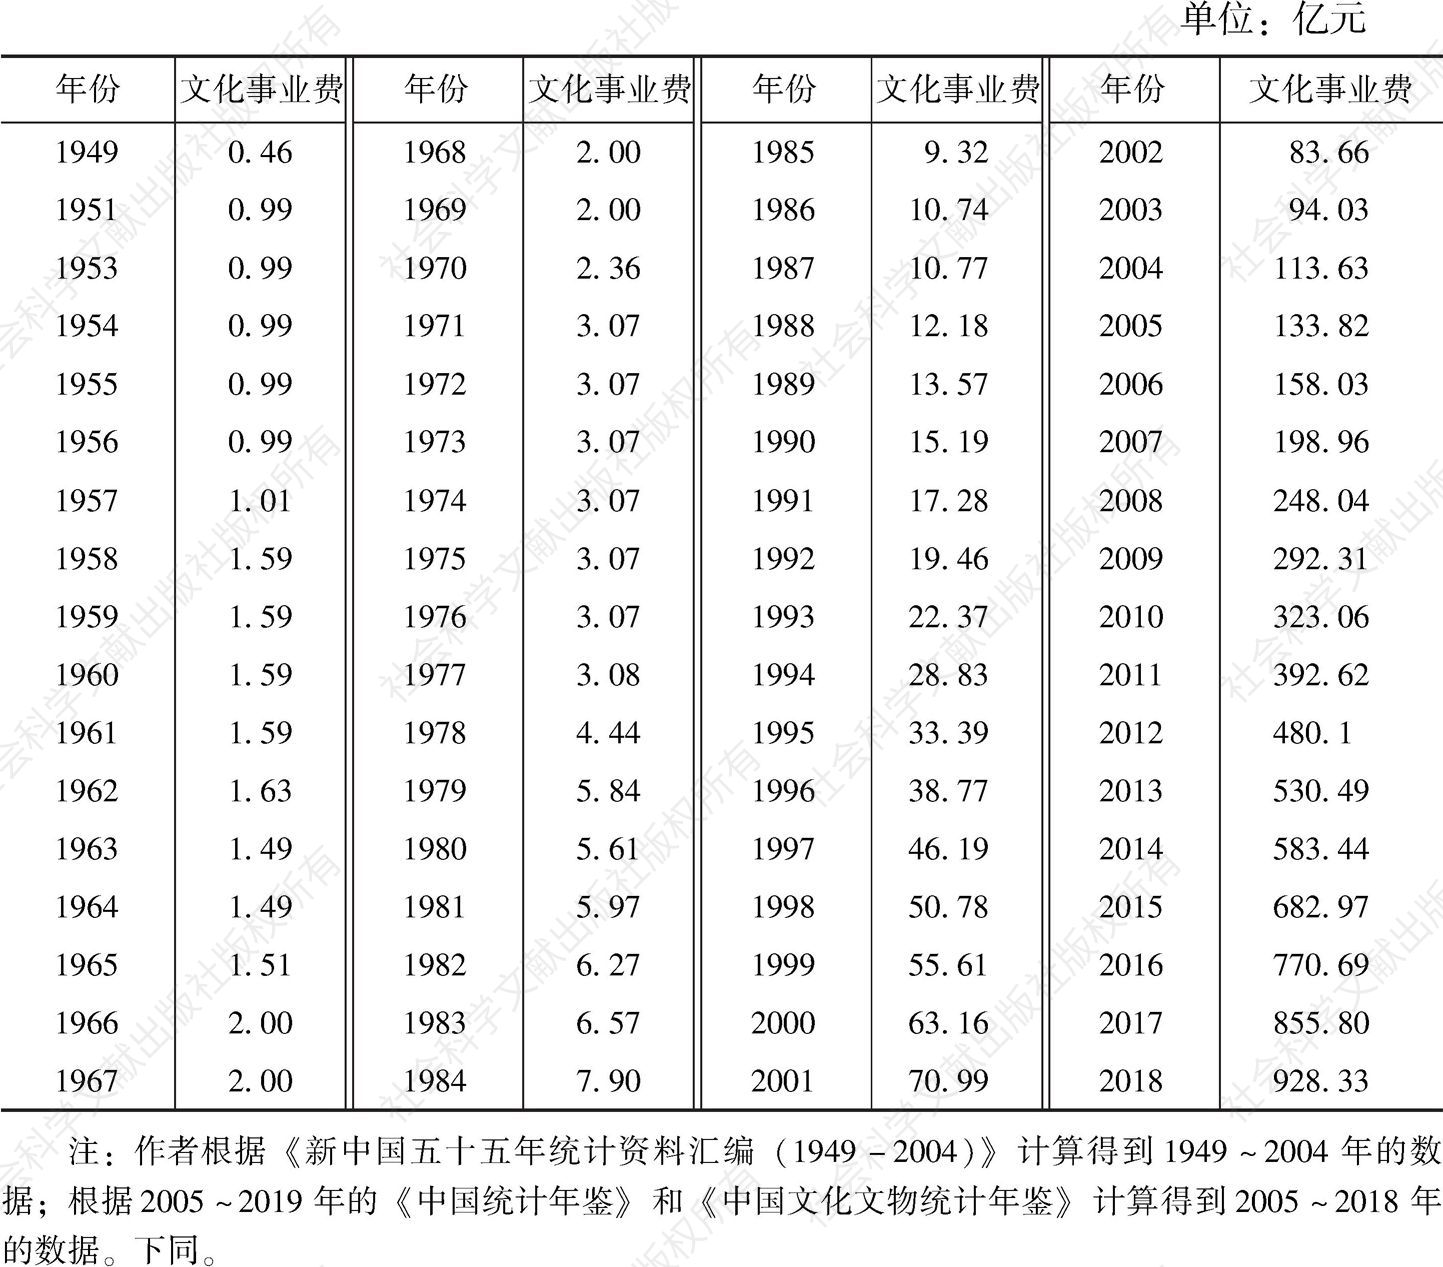 附表1 新中国成立70周年来的文化事业费的投入情况（1949～2018）